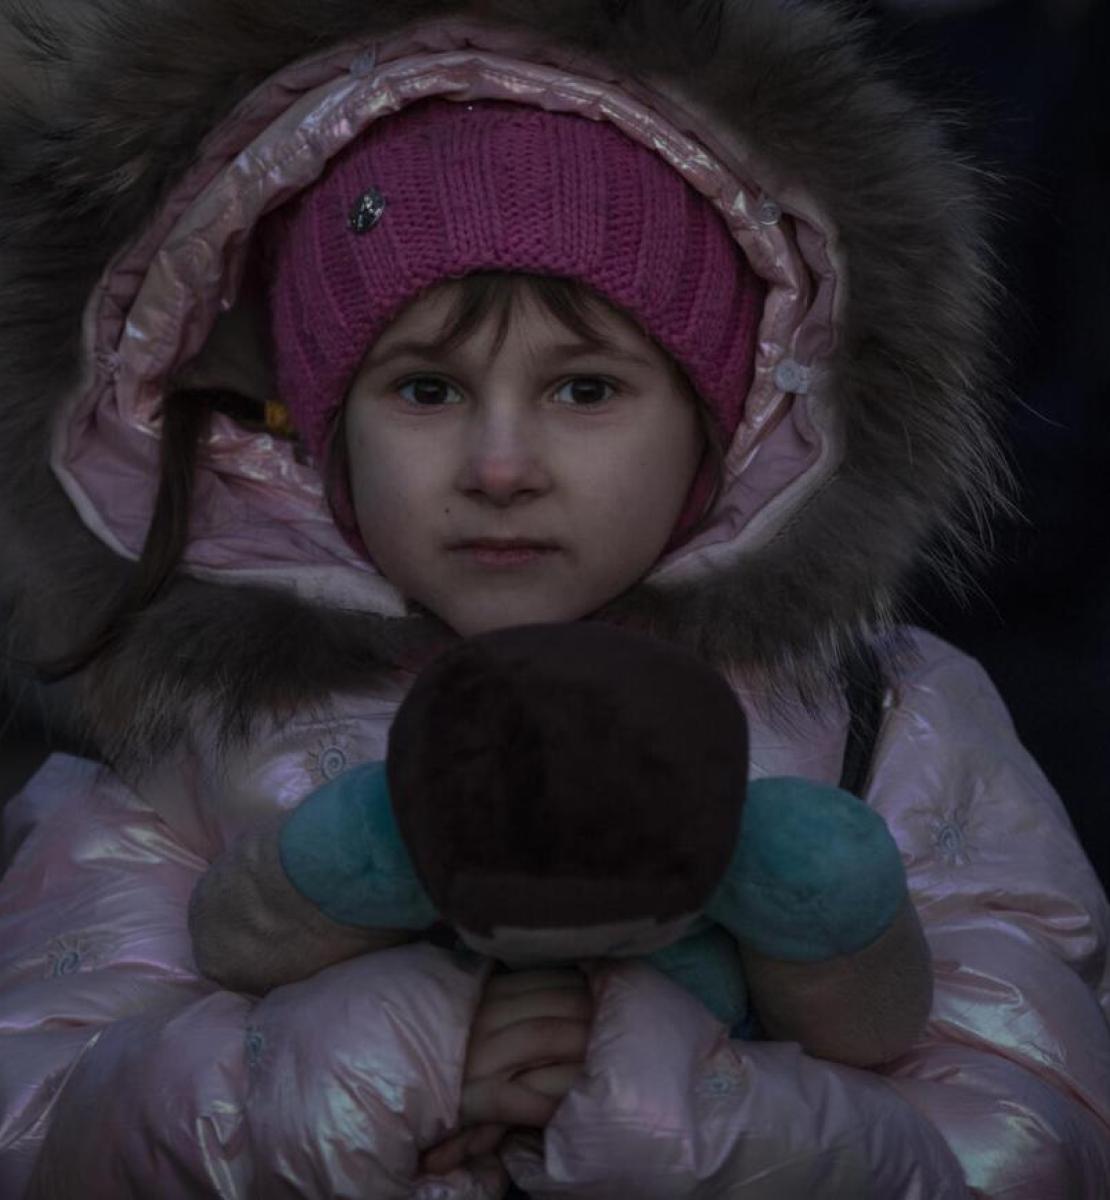 فتاة صغيرة ترتدي معطفًا ورديًا وتحمل دمية دب.